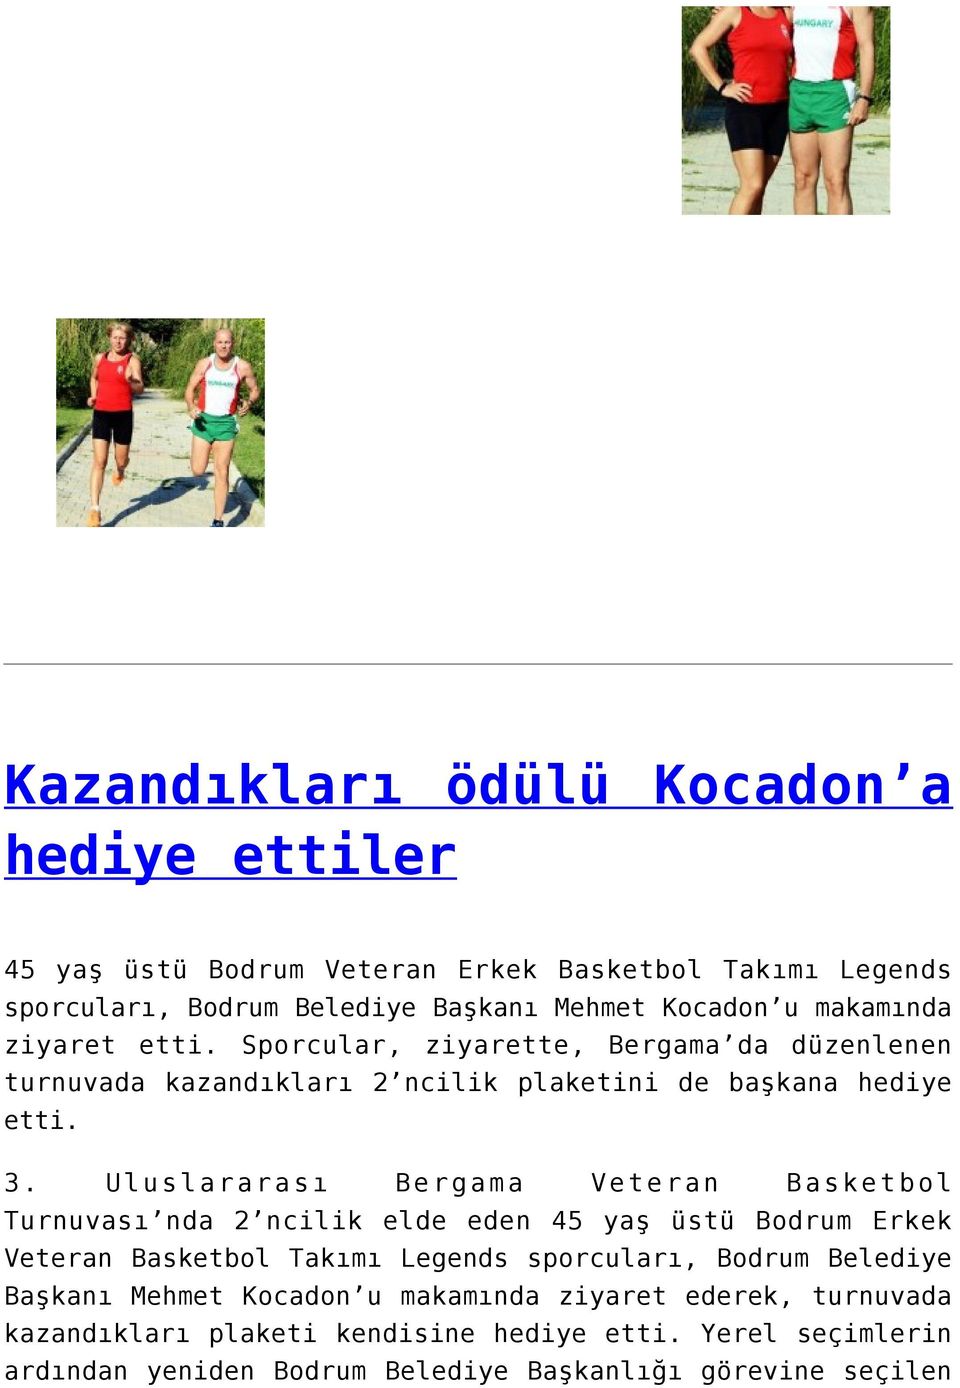 Uluslararası Bergama Veteran Basketbol Turnuvası nda 2 ncilik elde eden 45 yaş üstü Bodrum Erkek Veteran Basketbol Takımı Legends sporcuları, Bodrum Belediye